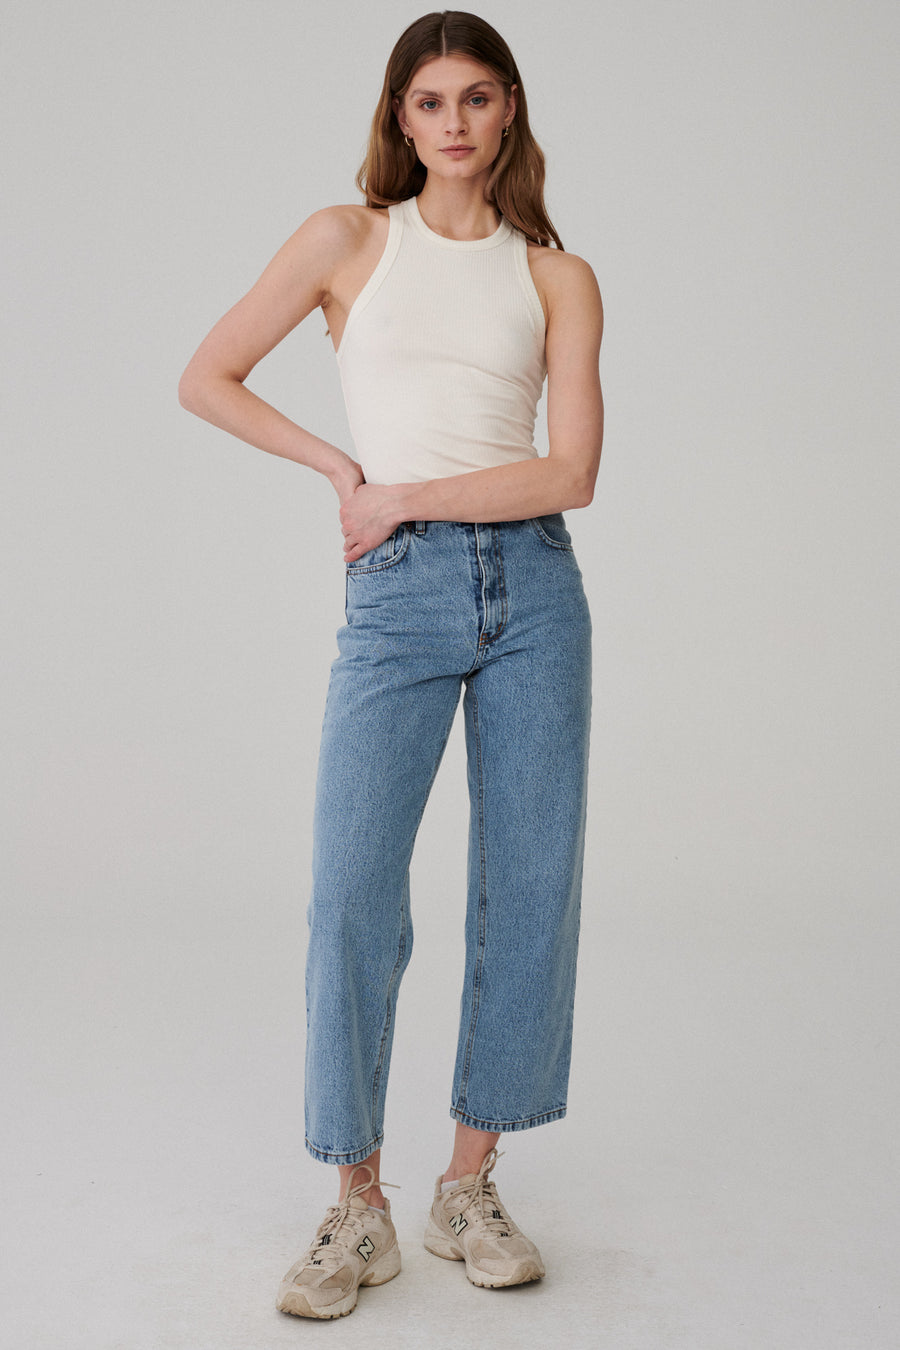 Bokserka z bawełny organicznej / 10 / 14 / cream white*spodnie-jeansowe-z-bawelna-z-recyklingu-05-12-light-indigo* ?Modelka ma 177 cm wzrostu i nosi rozmiar S?